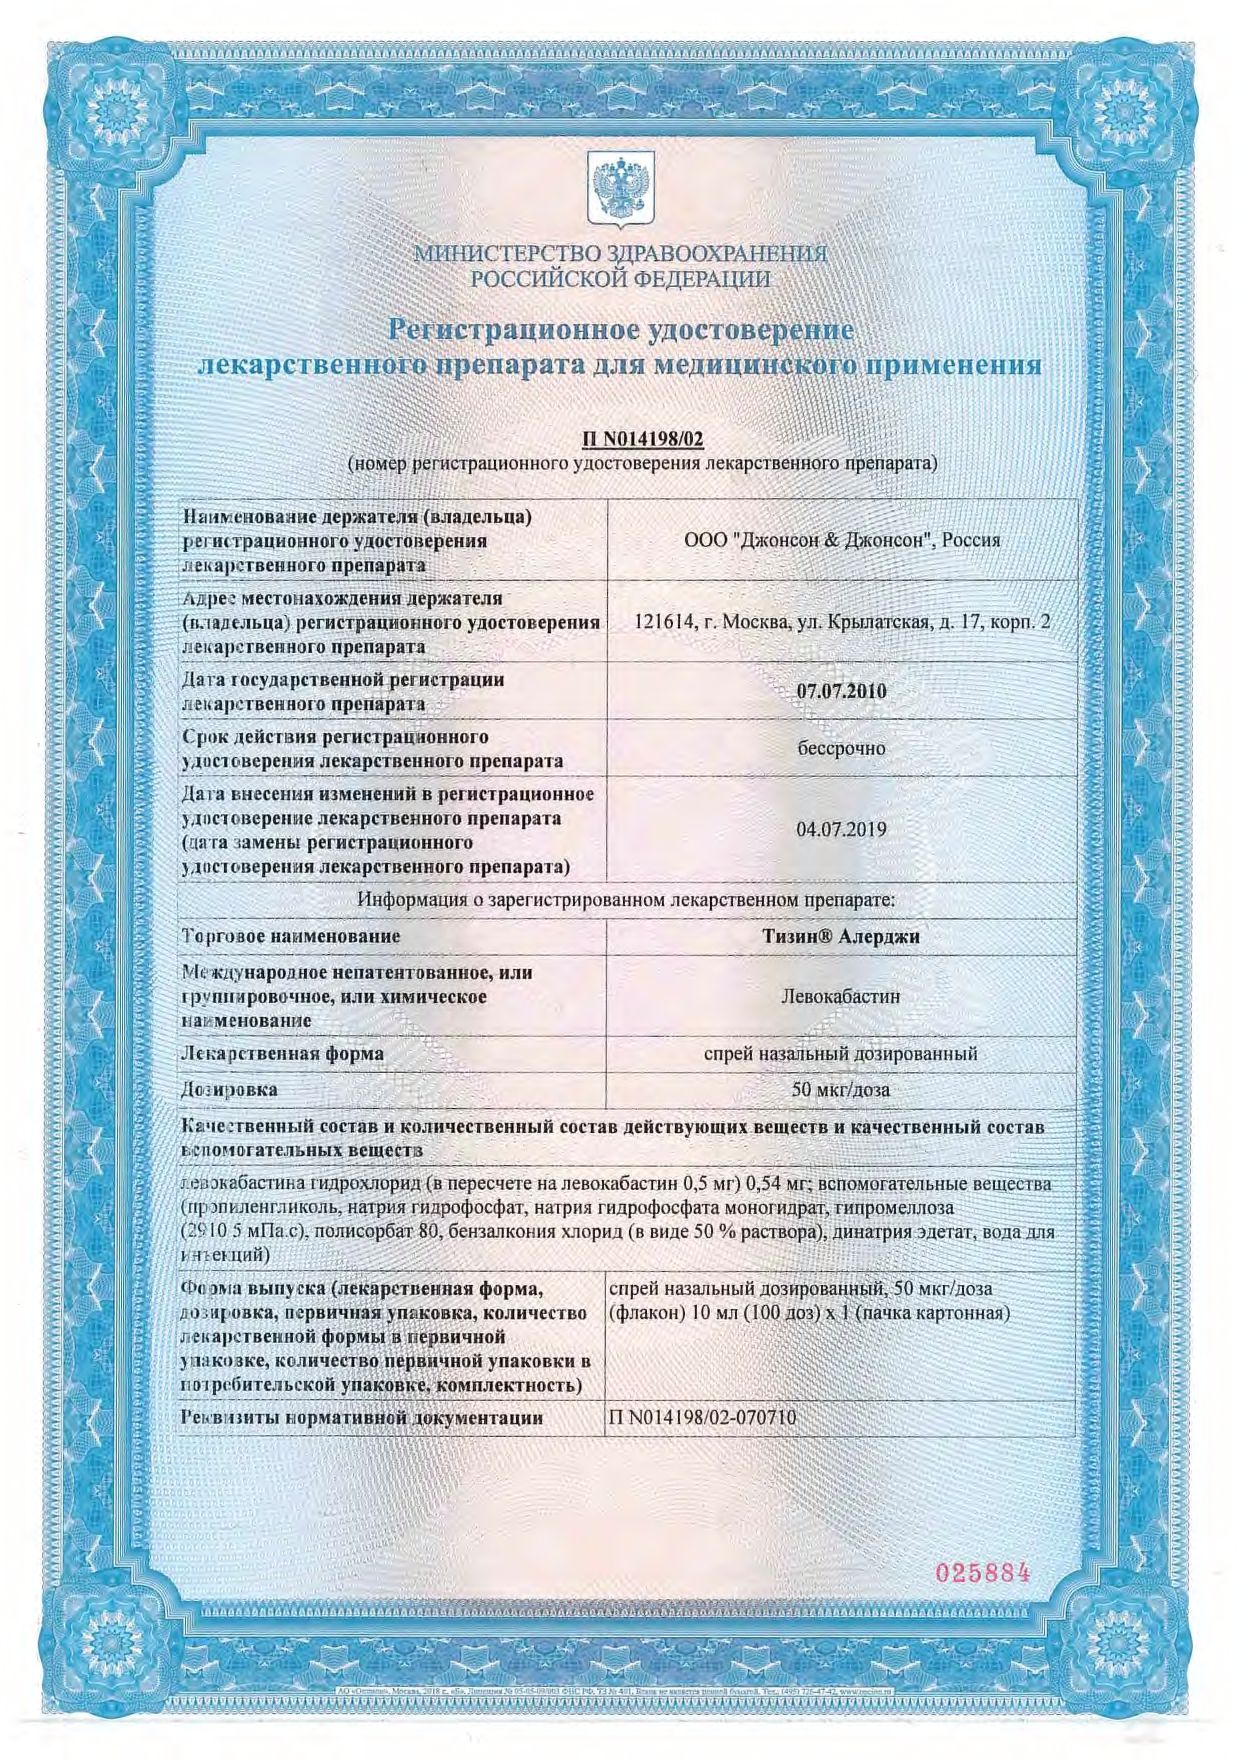 Тизин Алерджи сертификат